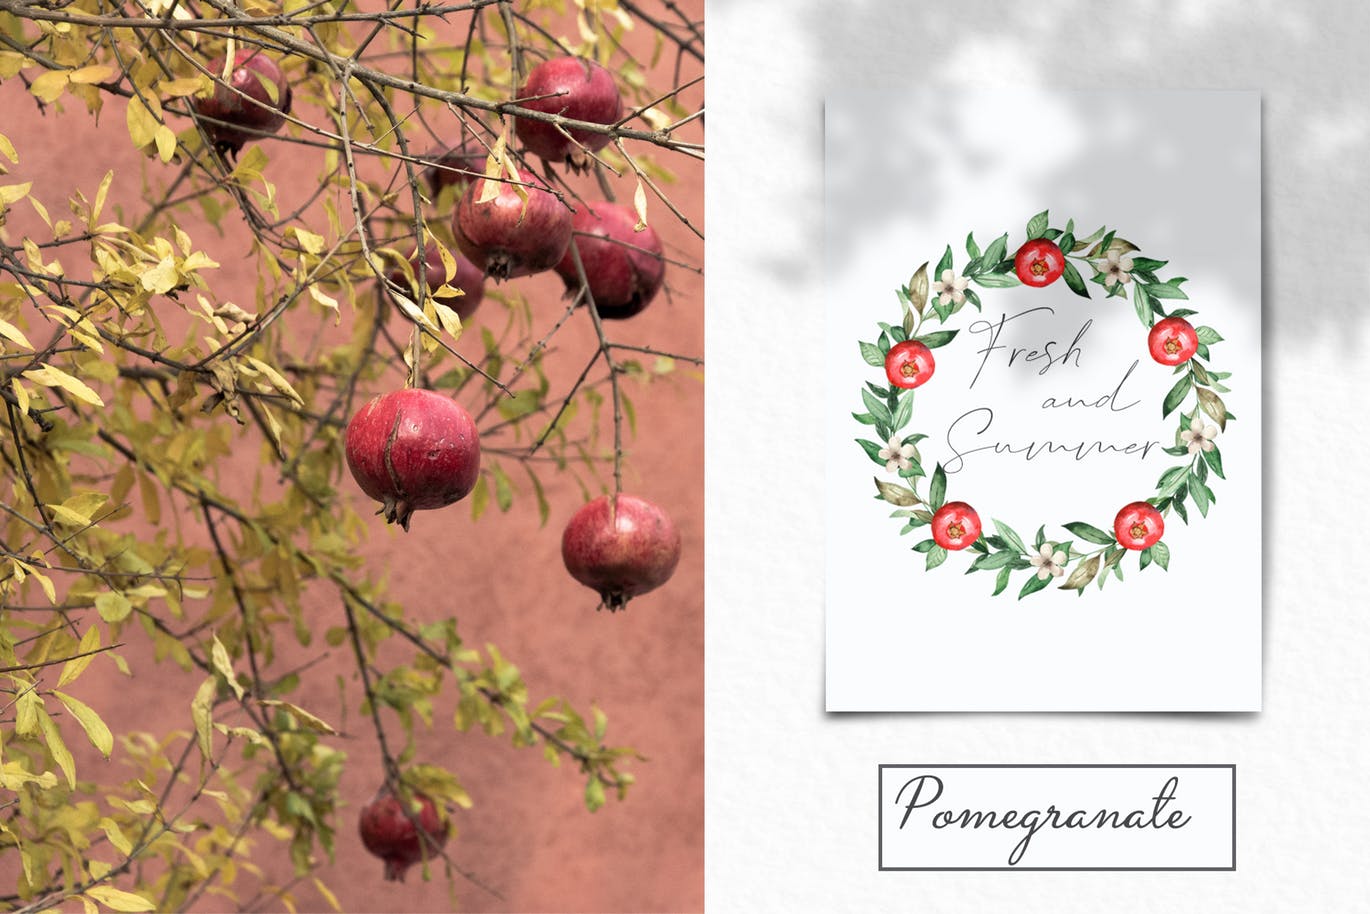 水彩石榴剪贴画/花框/花环素材库精选设计素材 Watercolor pomegranate. Clipart, frames, wreaths插图(10)